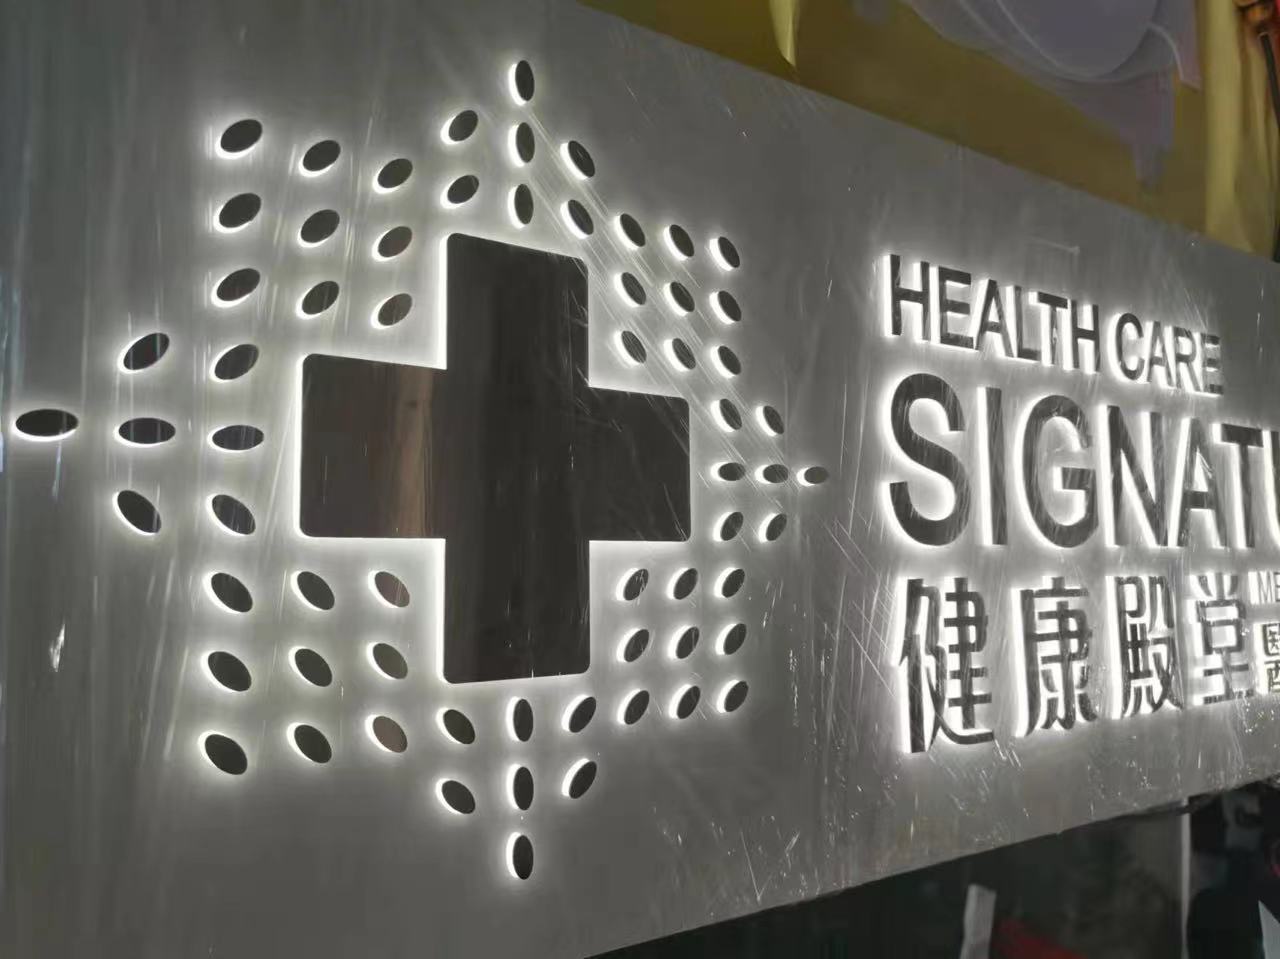 香港中醫師網 Hong Kong Chinese Medicine Platform 中醫診所 / 中醫師: Health Care Signature 